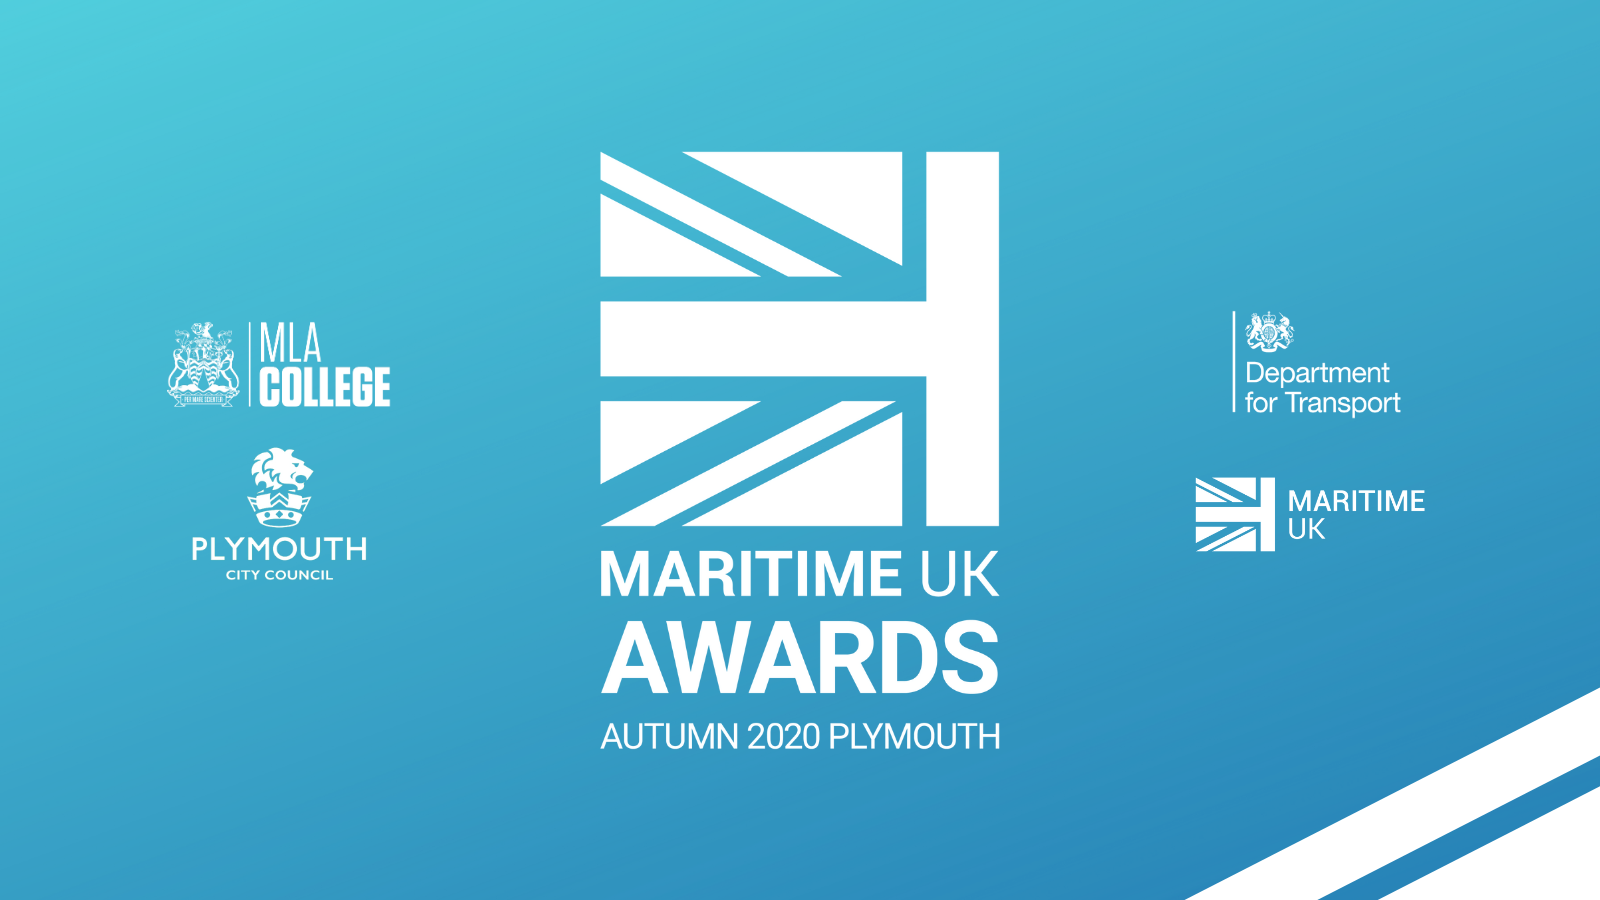 Copy of Maritime UK Awards 2020 (14).png